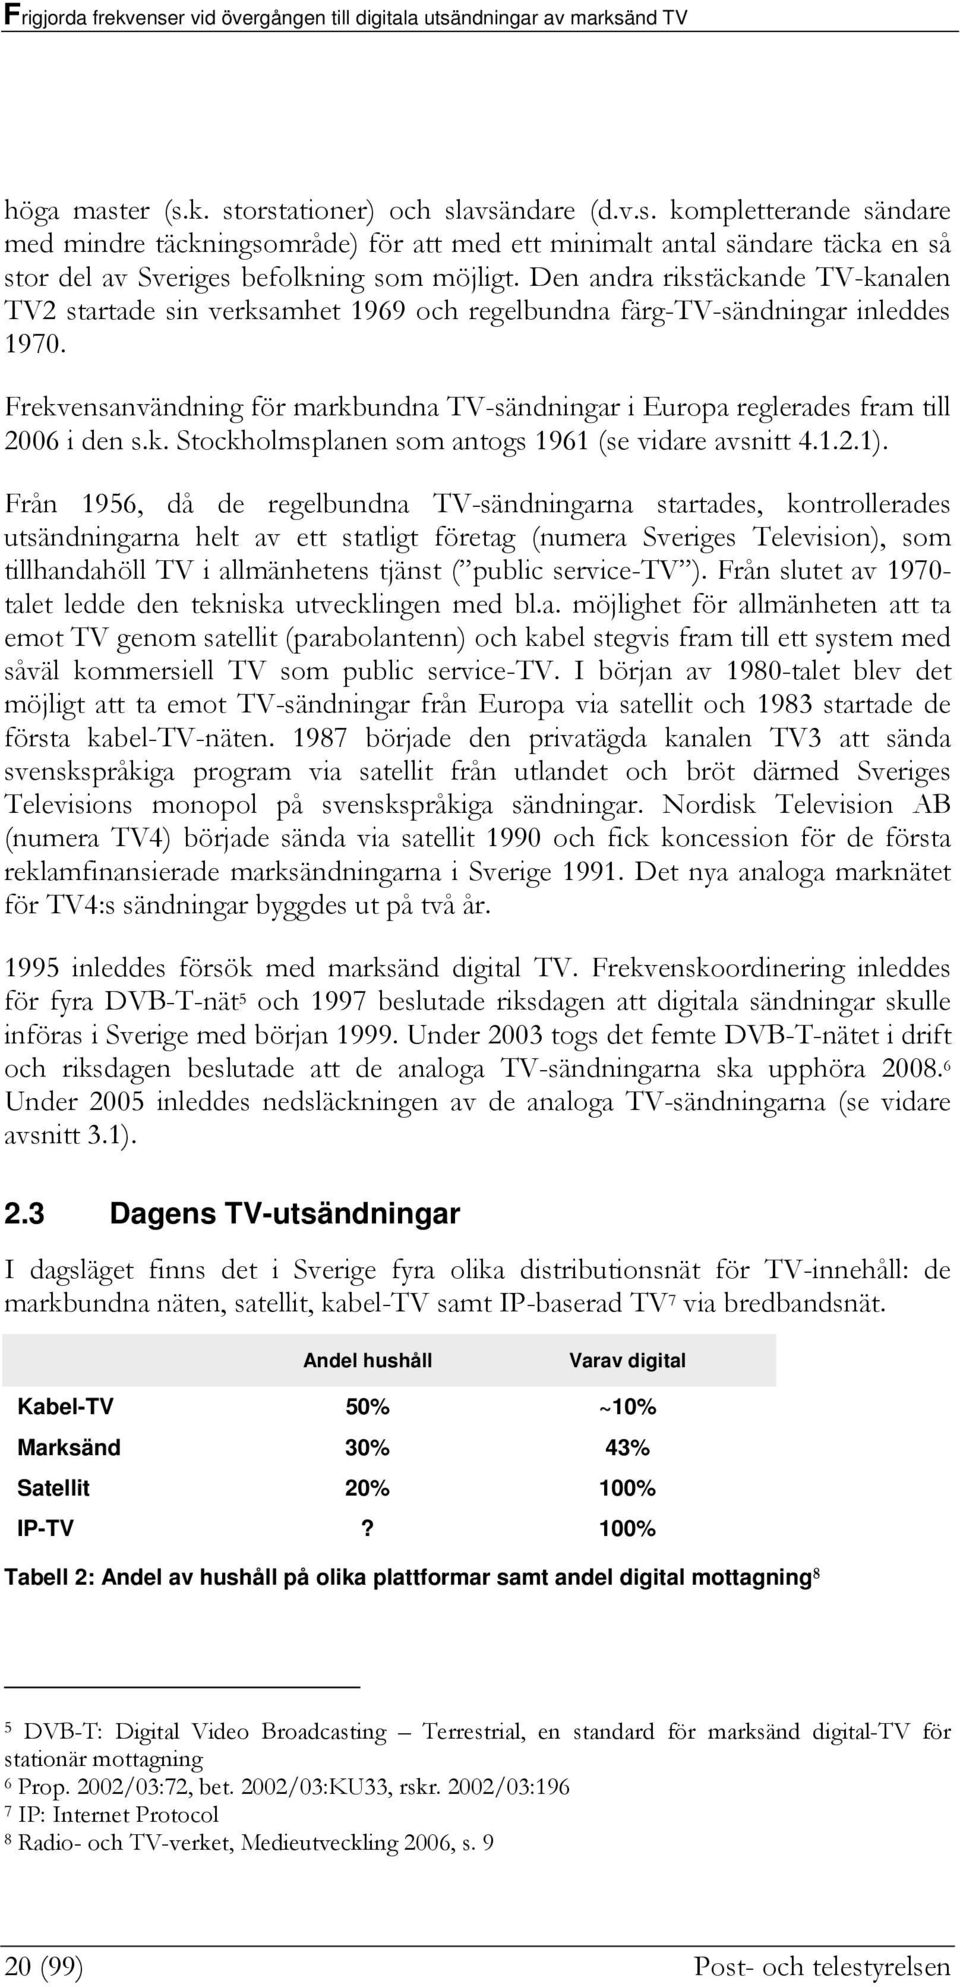 Frekvensanvändning för markbundna TV-sändningar i Europa reglerades fram till 2006 i den s.k. Stockholmsplanen som antogs 1961 (se vidare avsnitt 4.1.2.1).